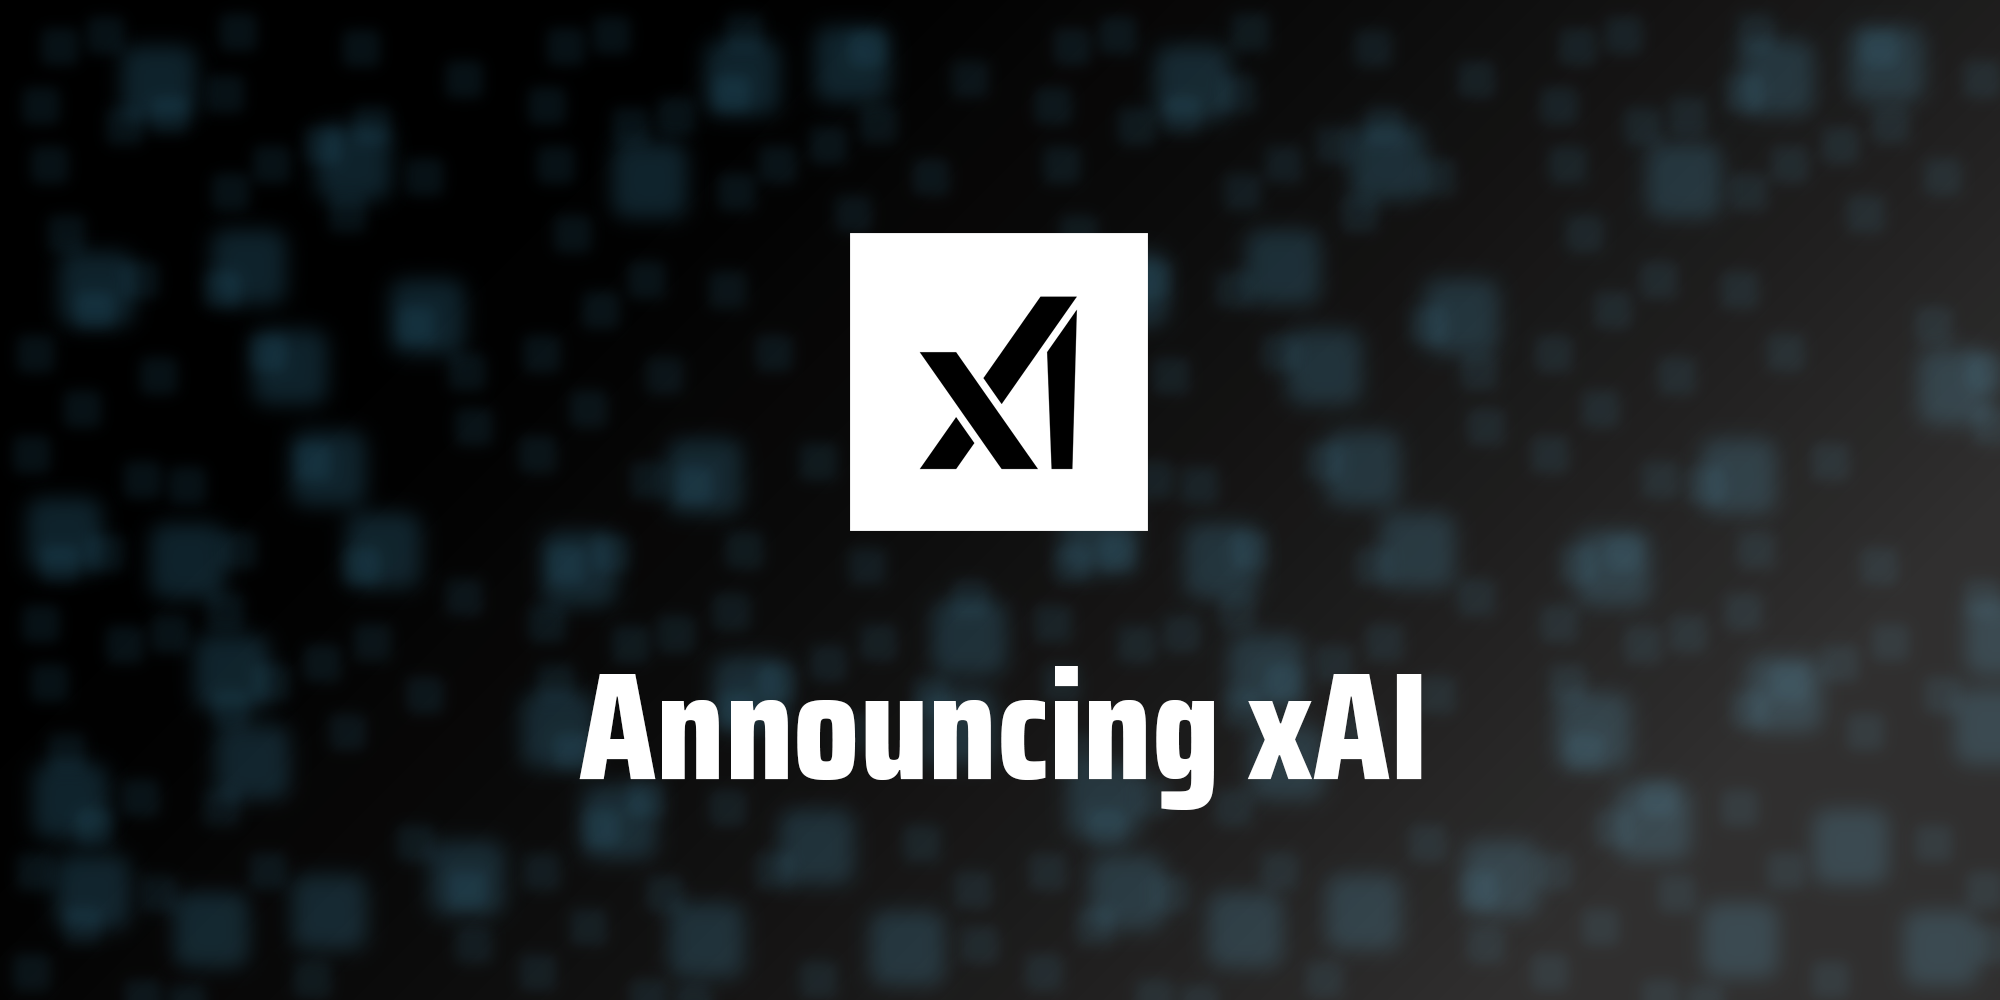 xAI wyda pierwszy model sztucznej inteligencji dla "wybranej grupy" użytkowników